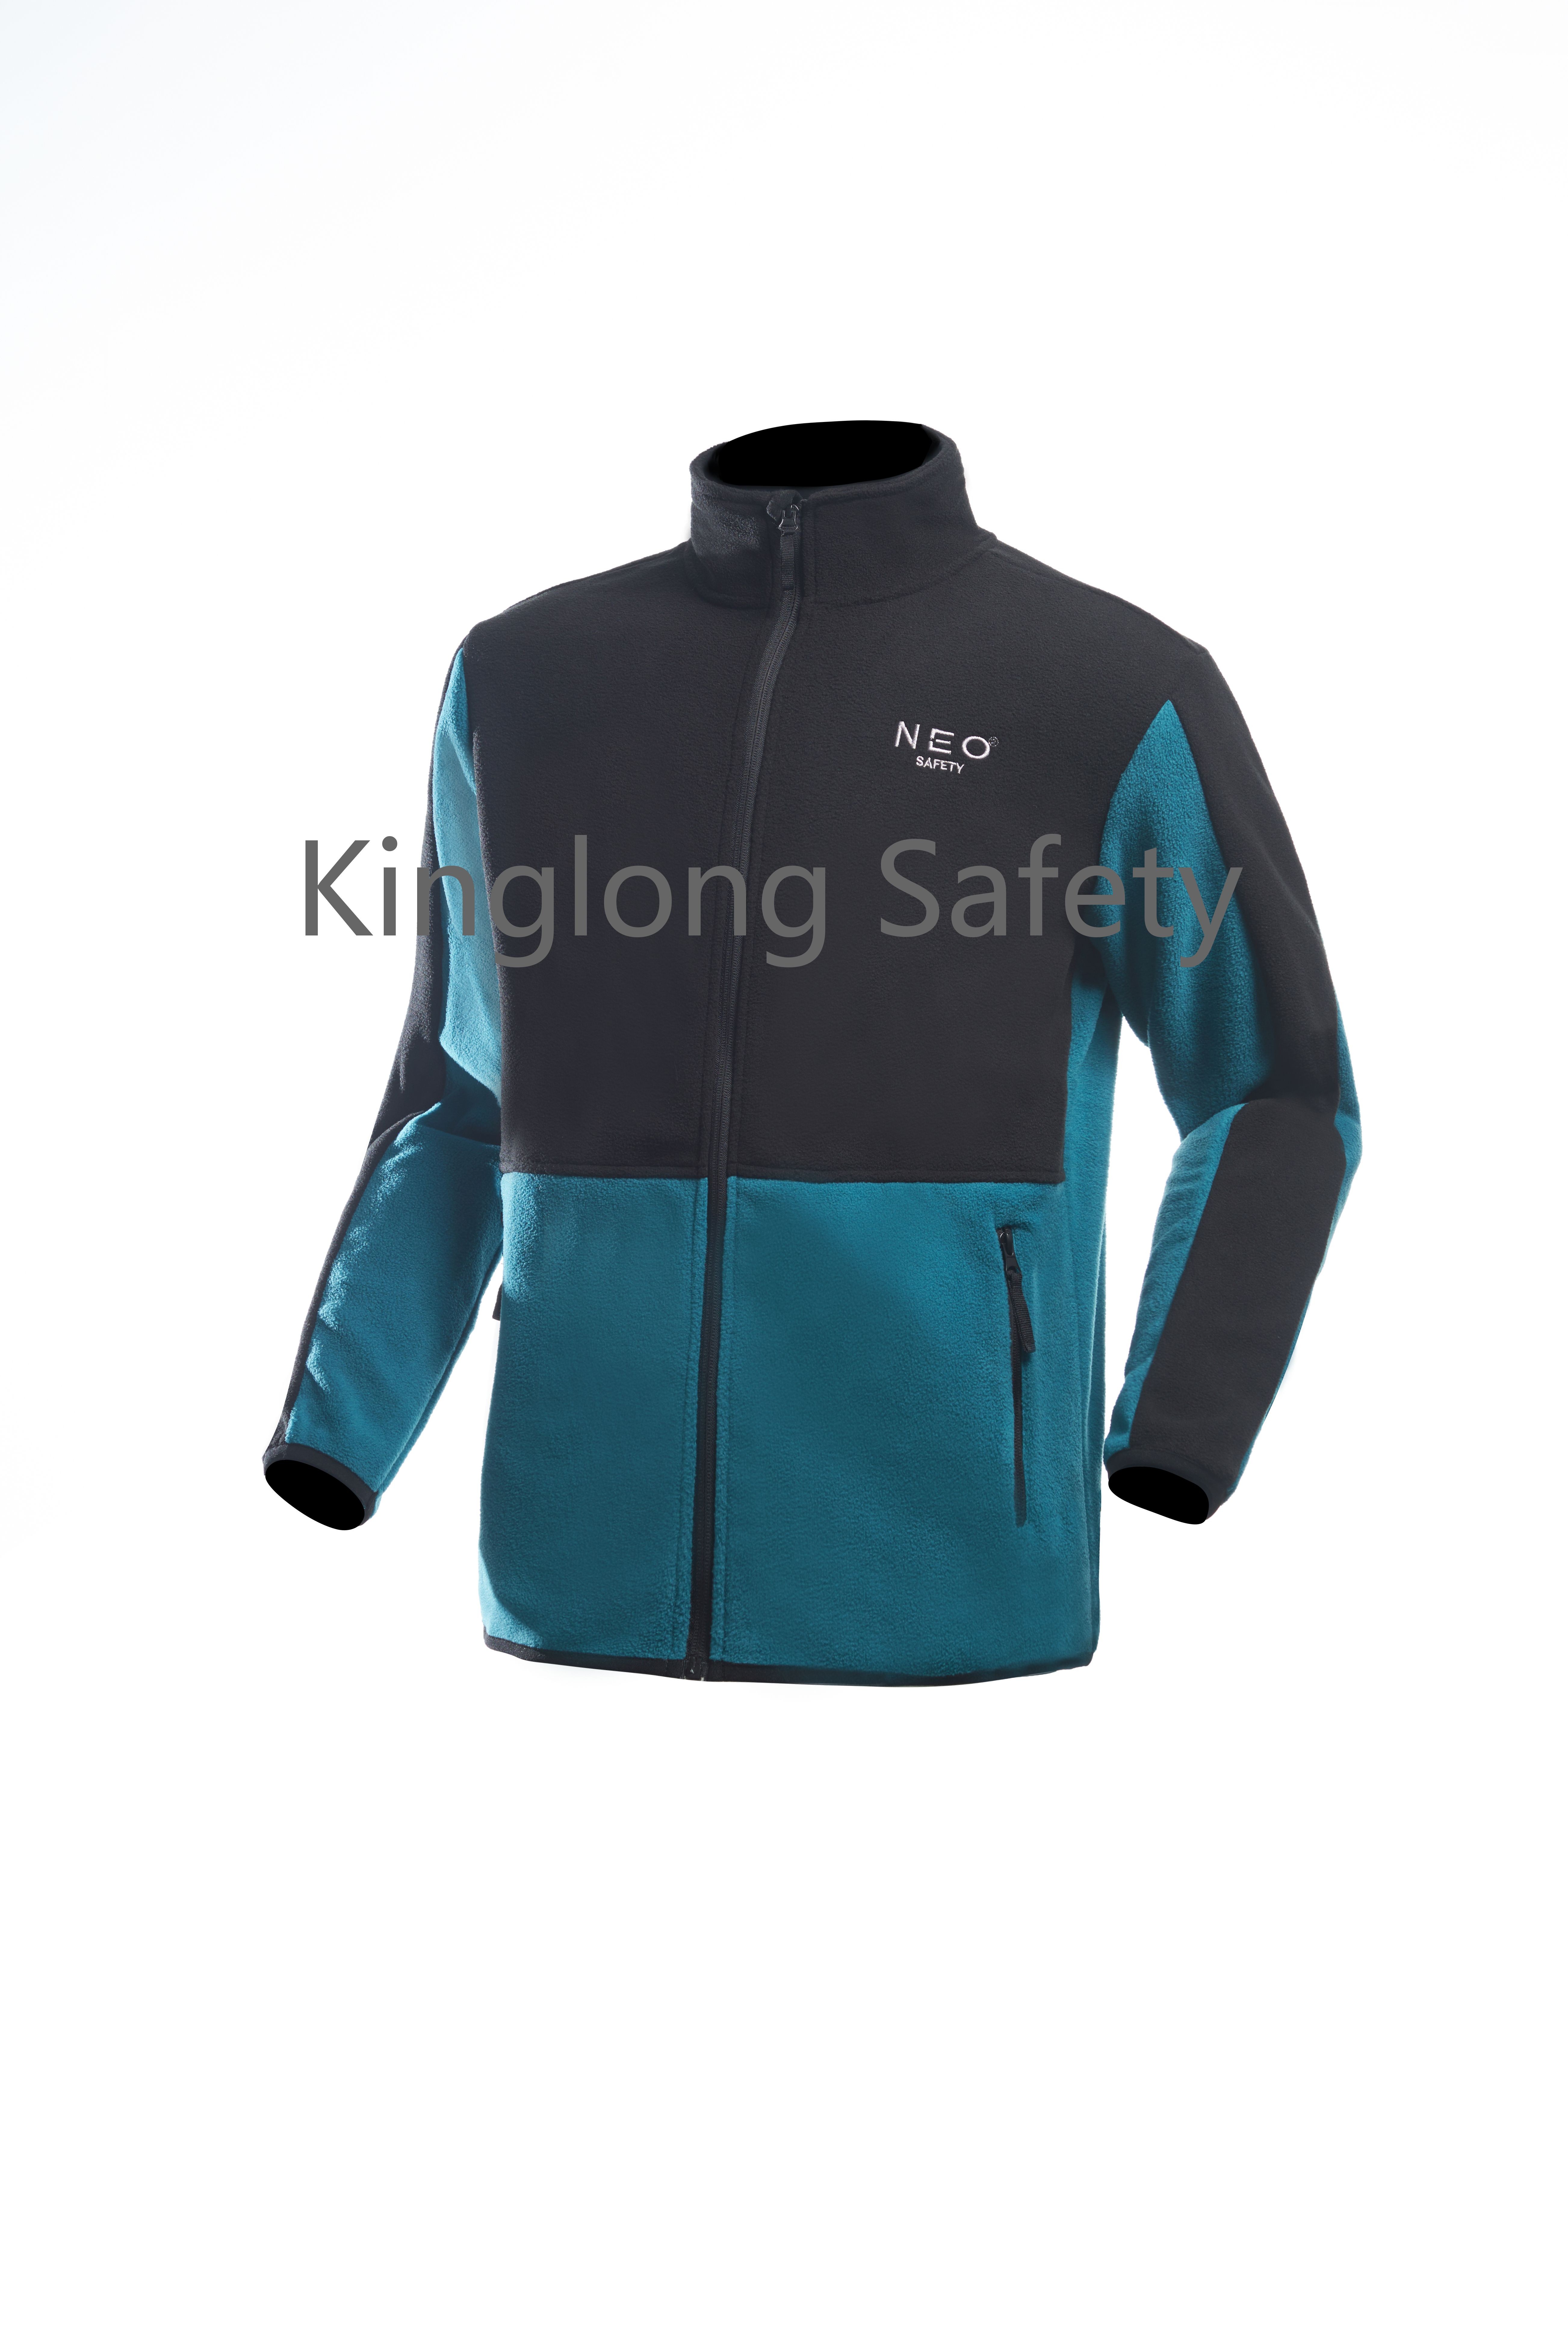 Čína Pánská oboustranný zip Polar Fleece Jacket Zima Podzim Jaro pro muže Custom Logo Outdoor Workwear Company Uniform výrobce